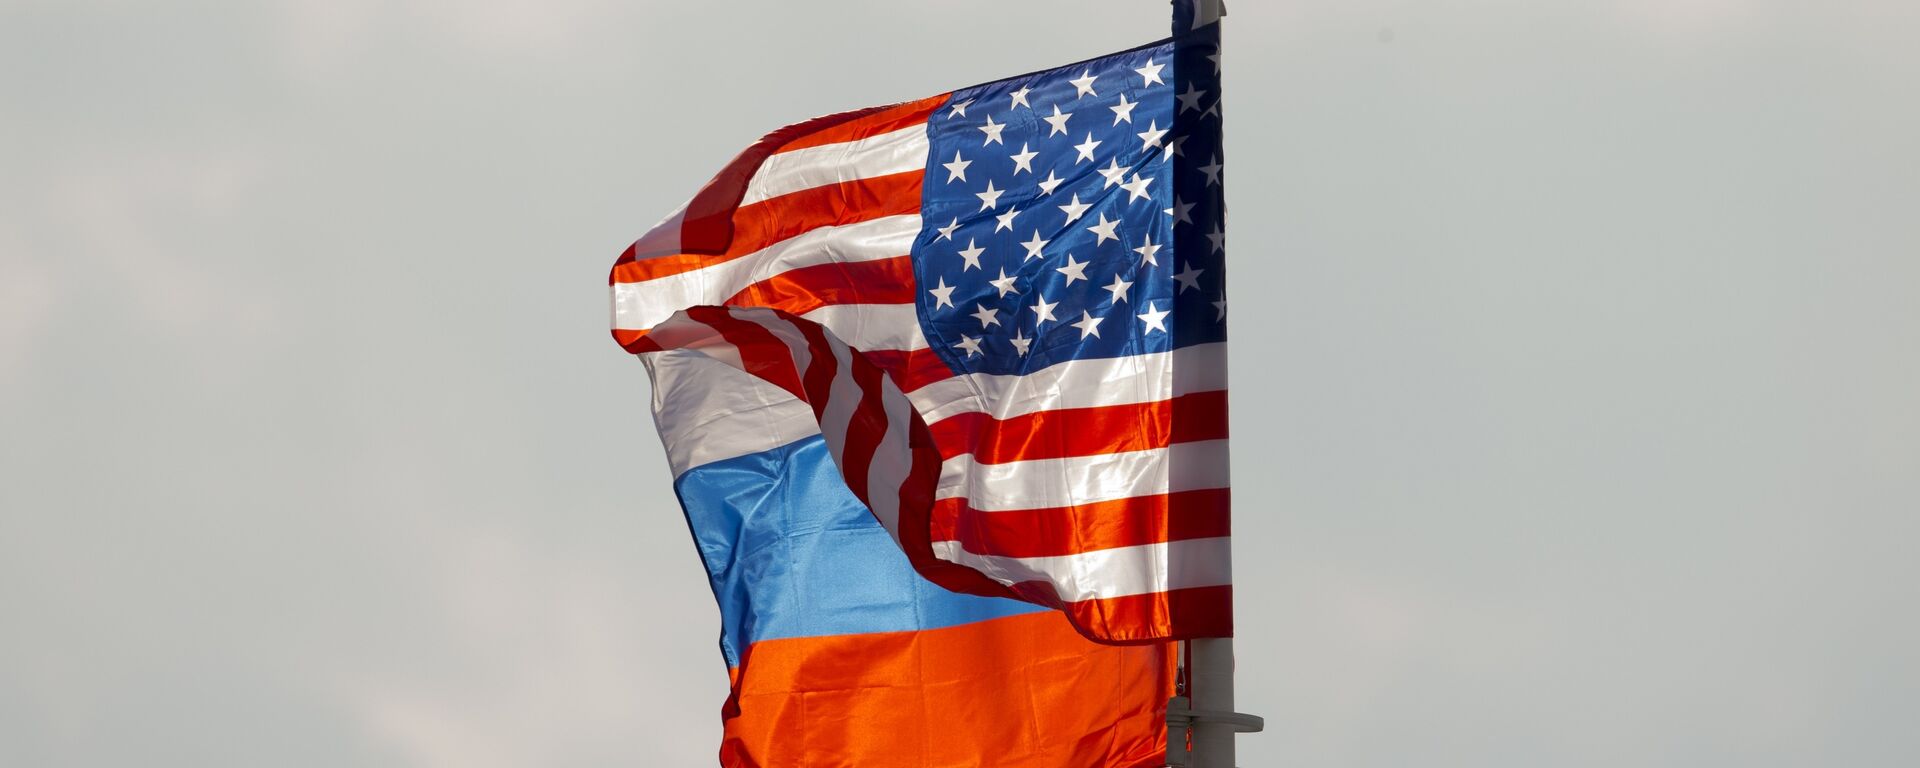 Zastave SAD i Rusije - Sputnik Srbija, 1920, 07.12.2021